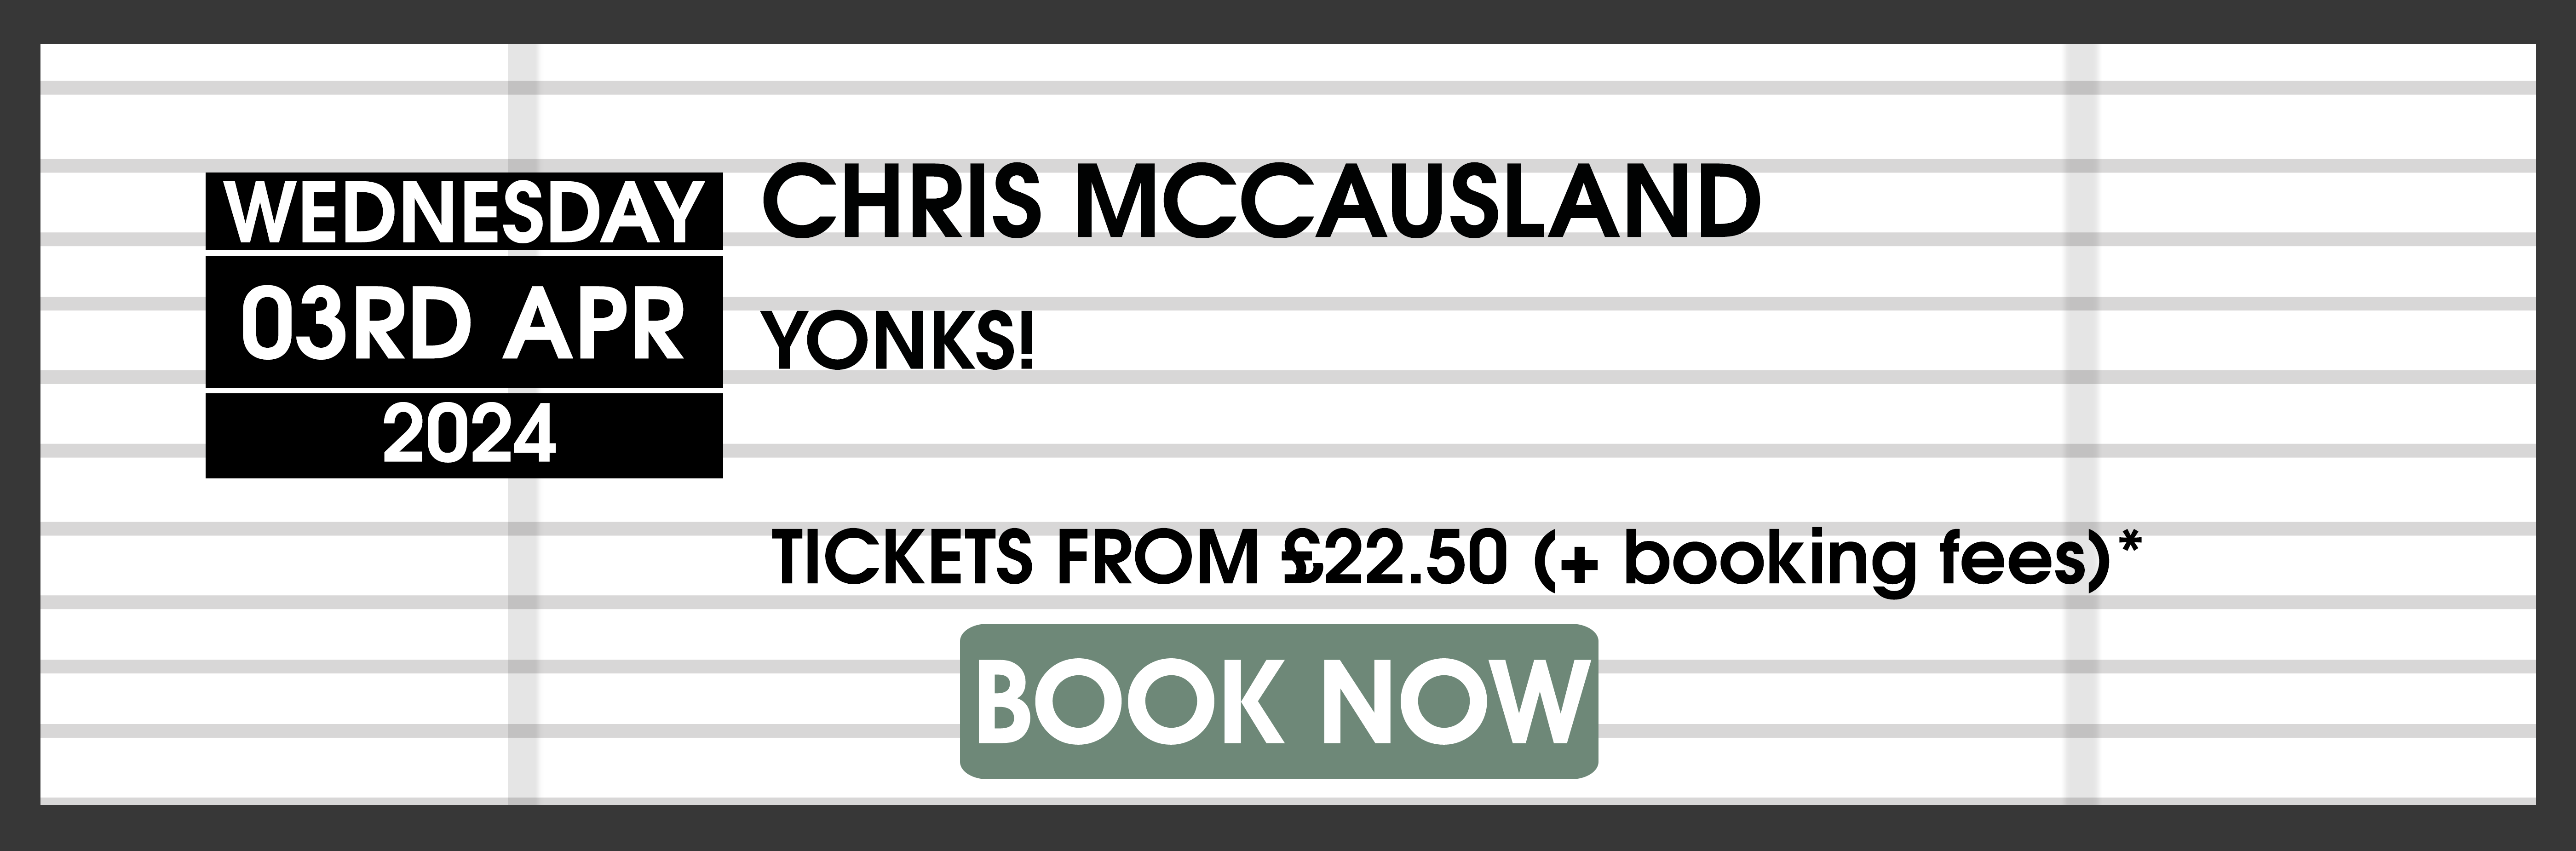 24.04.03 Chris McCausland BOOK